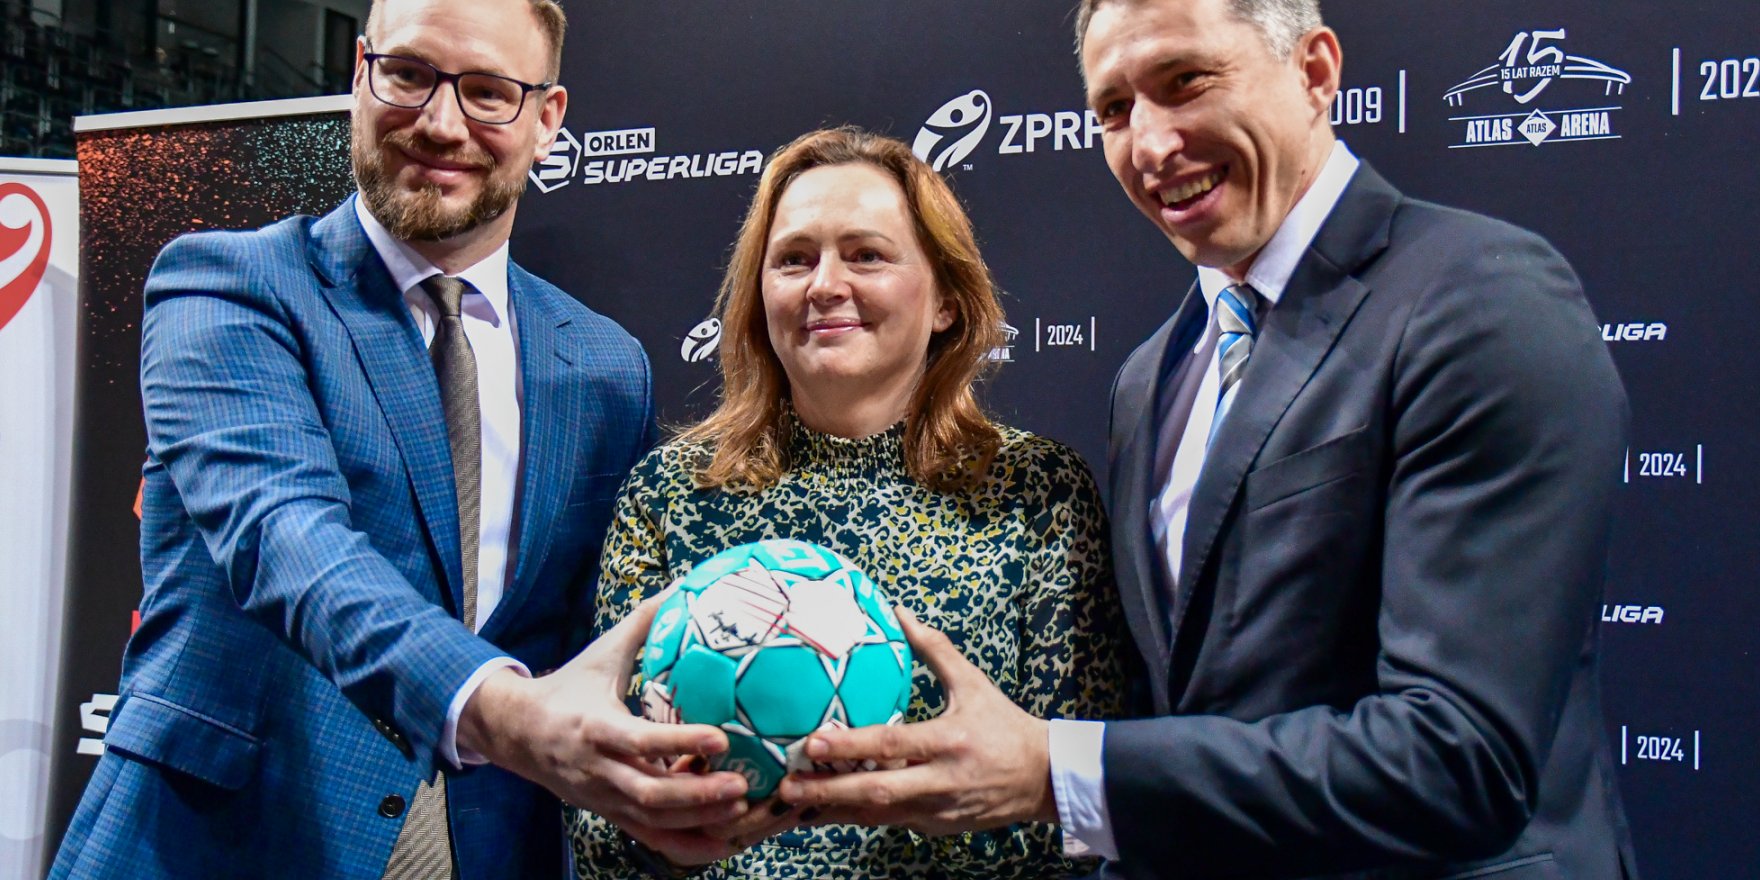 Piłka ręczna na najwyższym poziomie wraca do Łodzi. Superpuchar Polski w Atlas Arenie